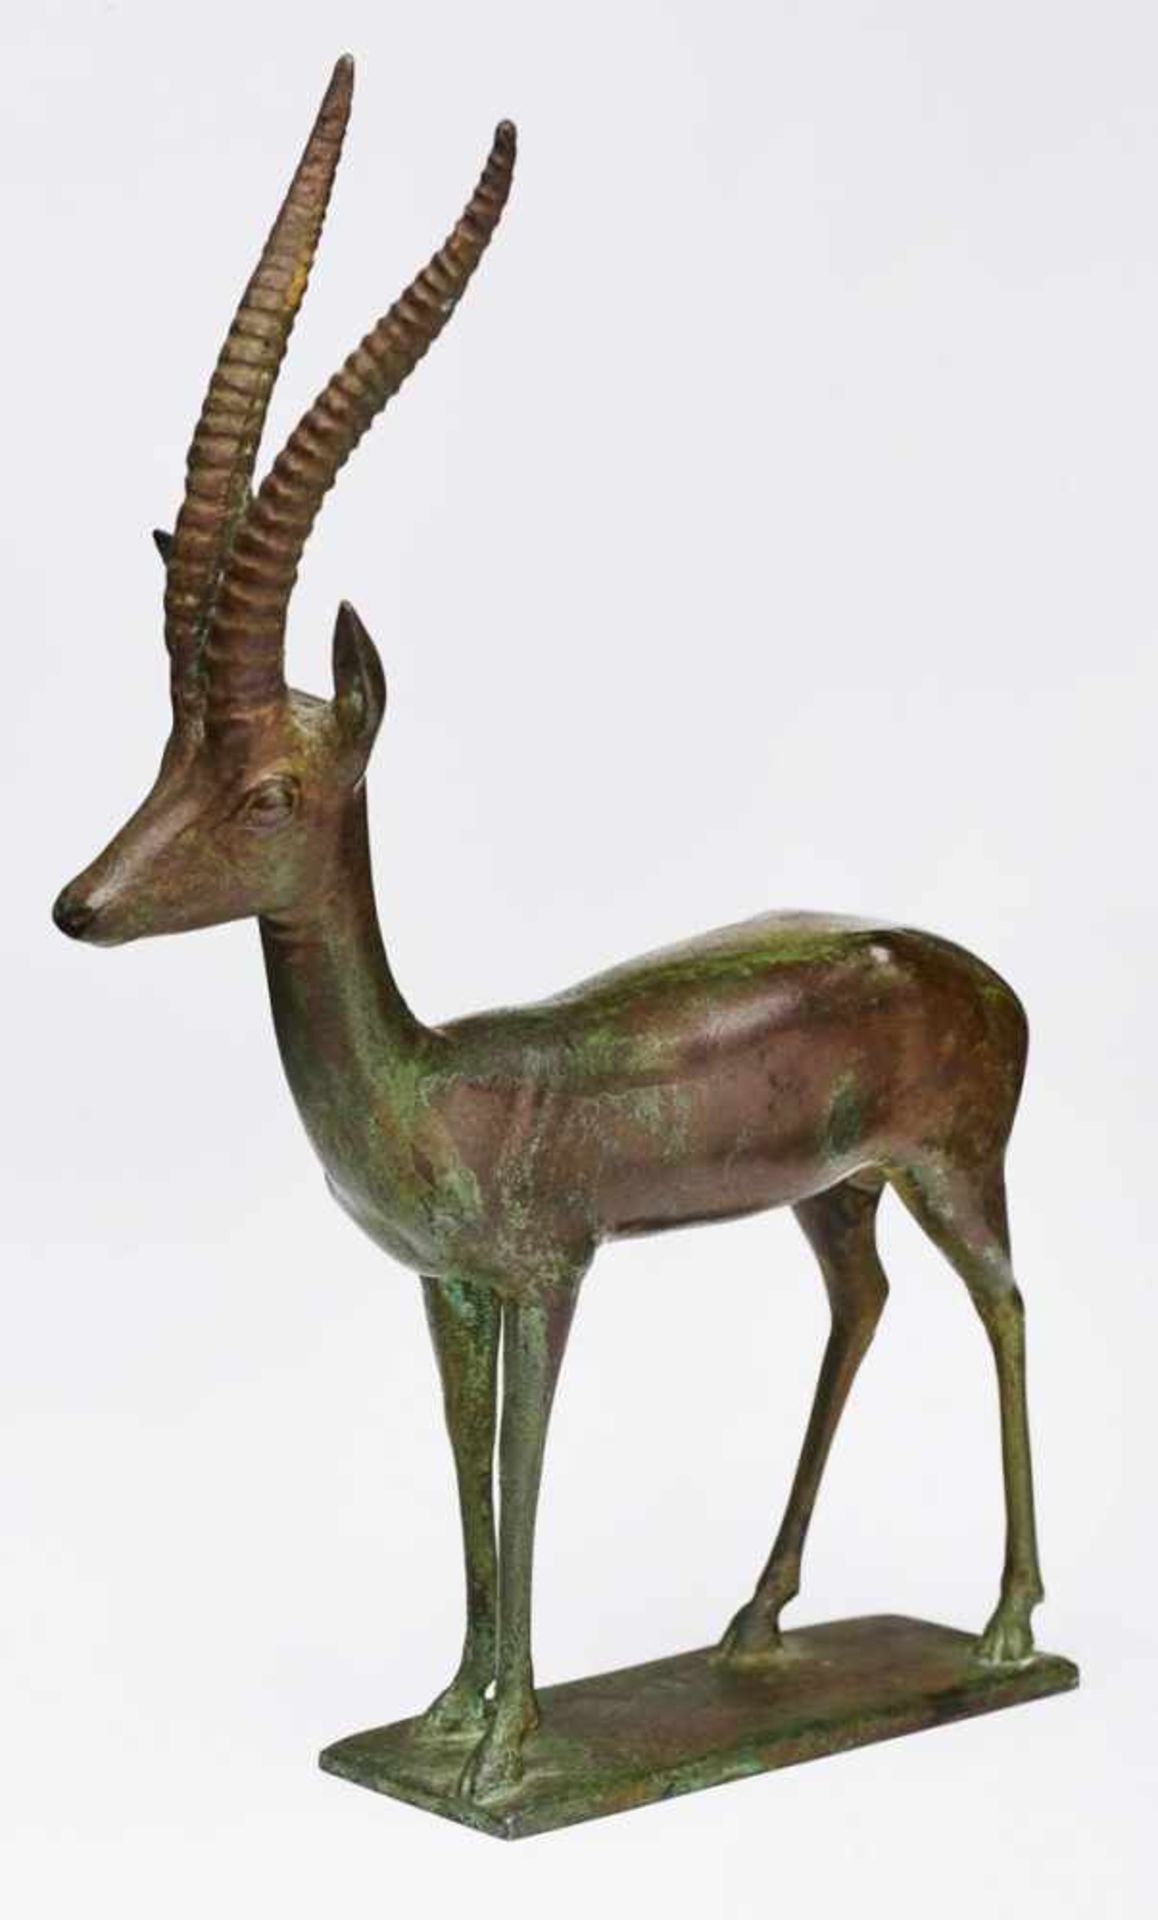 Bronze Harold Winter(1887 Frankfurt - 1969 Oberursel) "Gazelle", Entwurf: 1920. Grünlich/schwarz